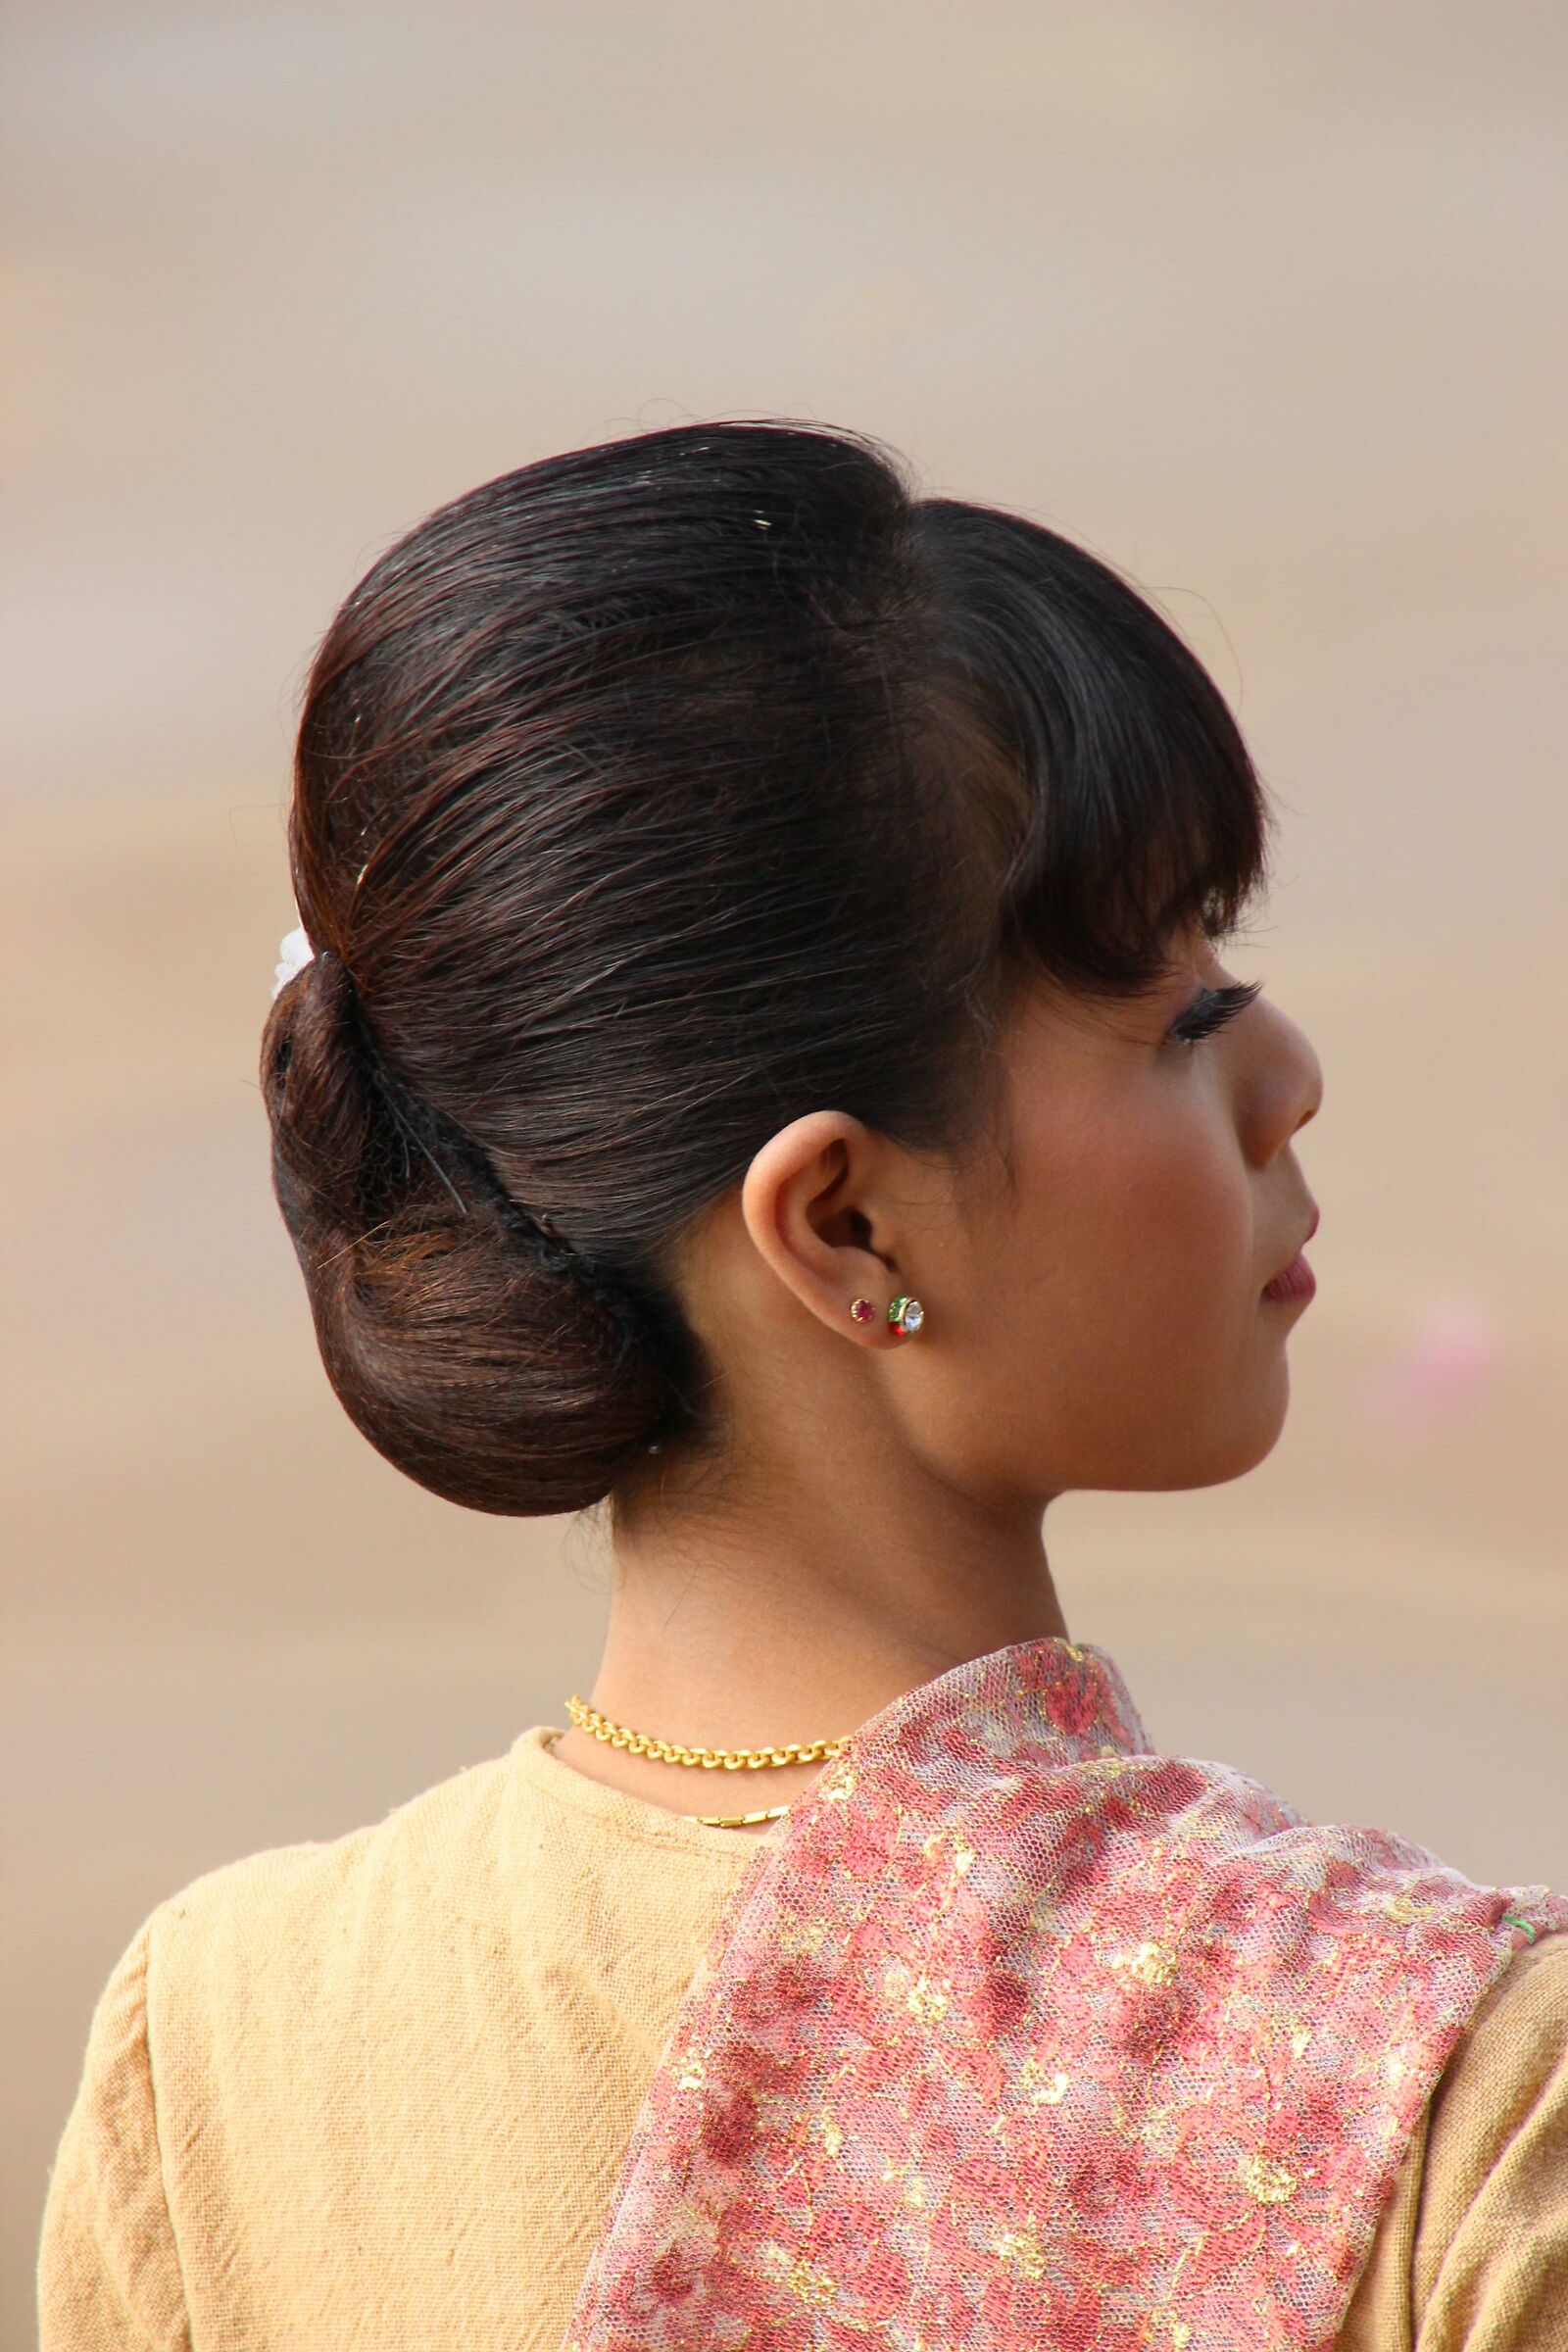 Burmese elegance...